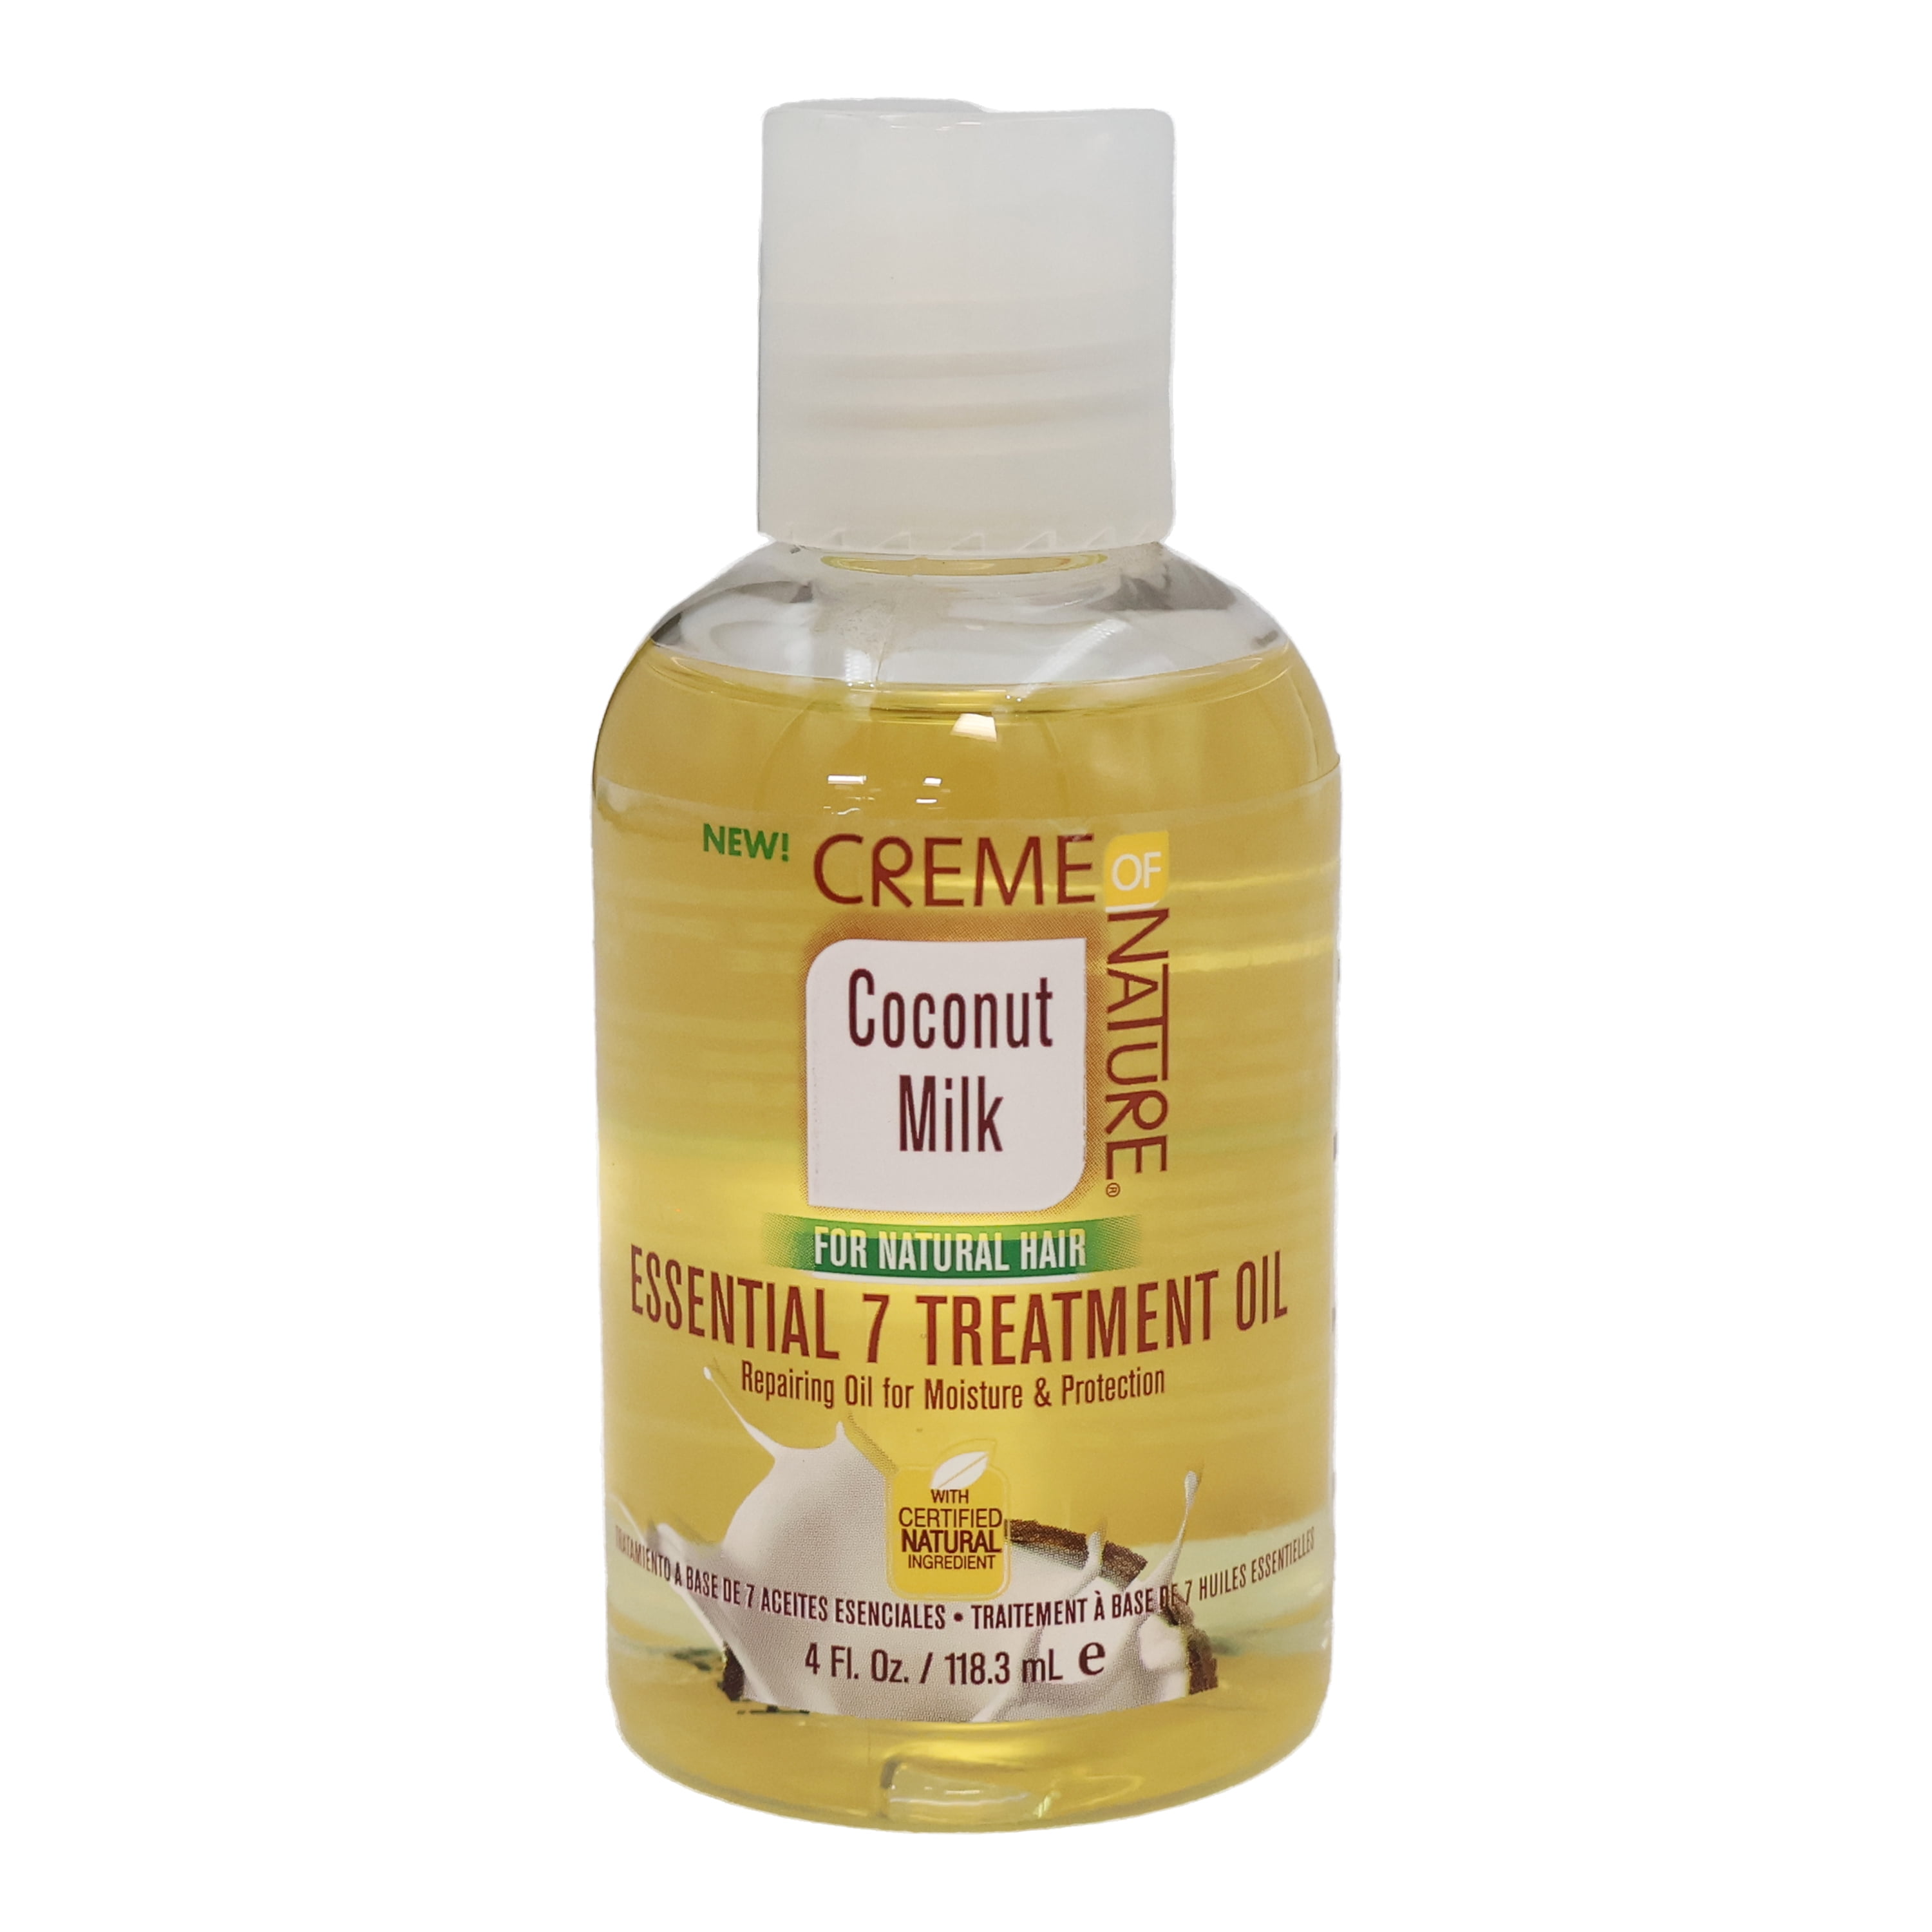 Coconut Milk Essential 7 Treatment Oil - Creme of Nature®